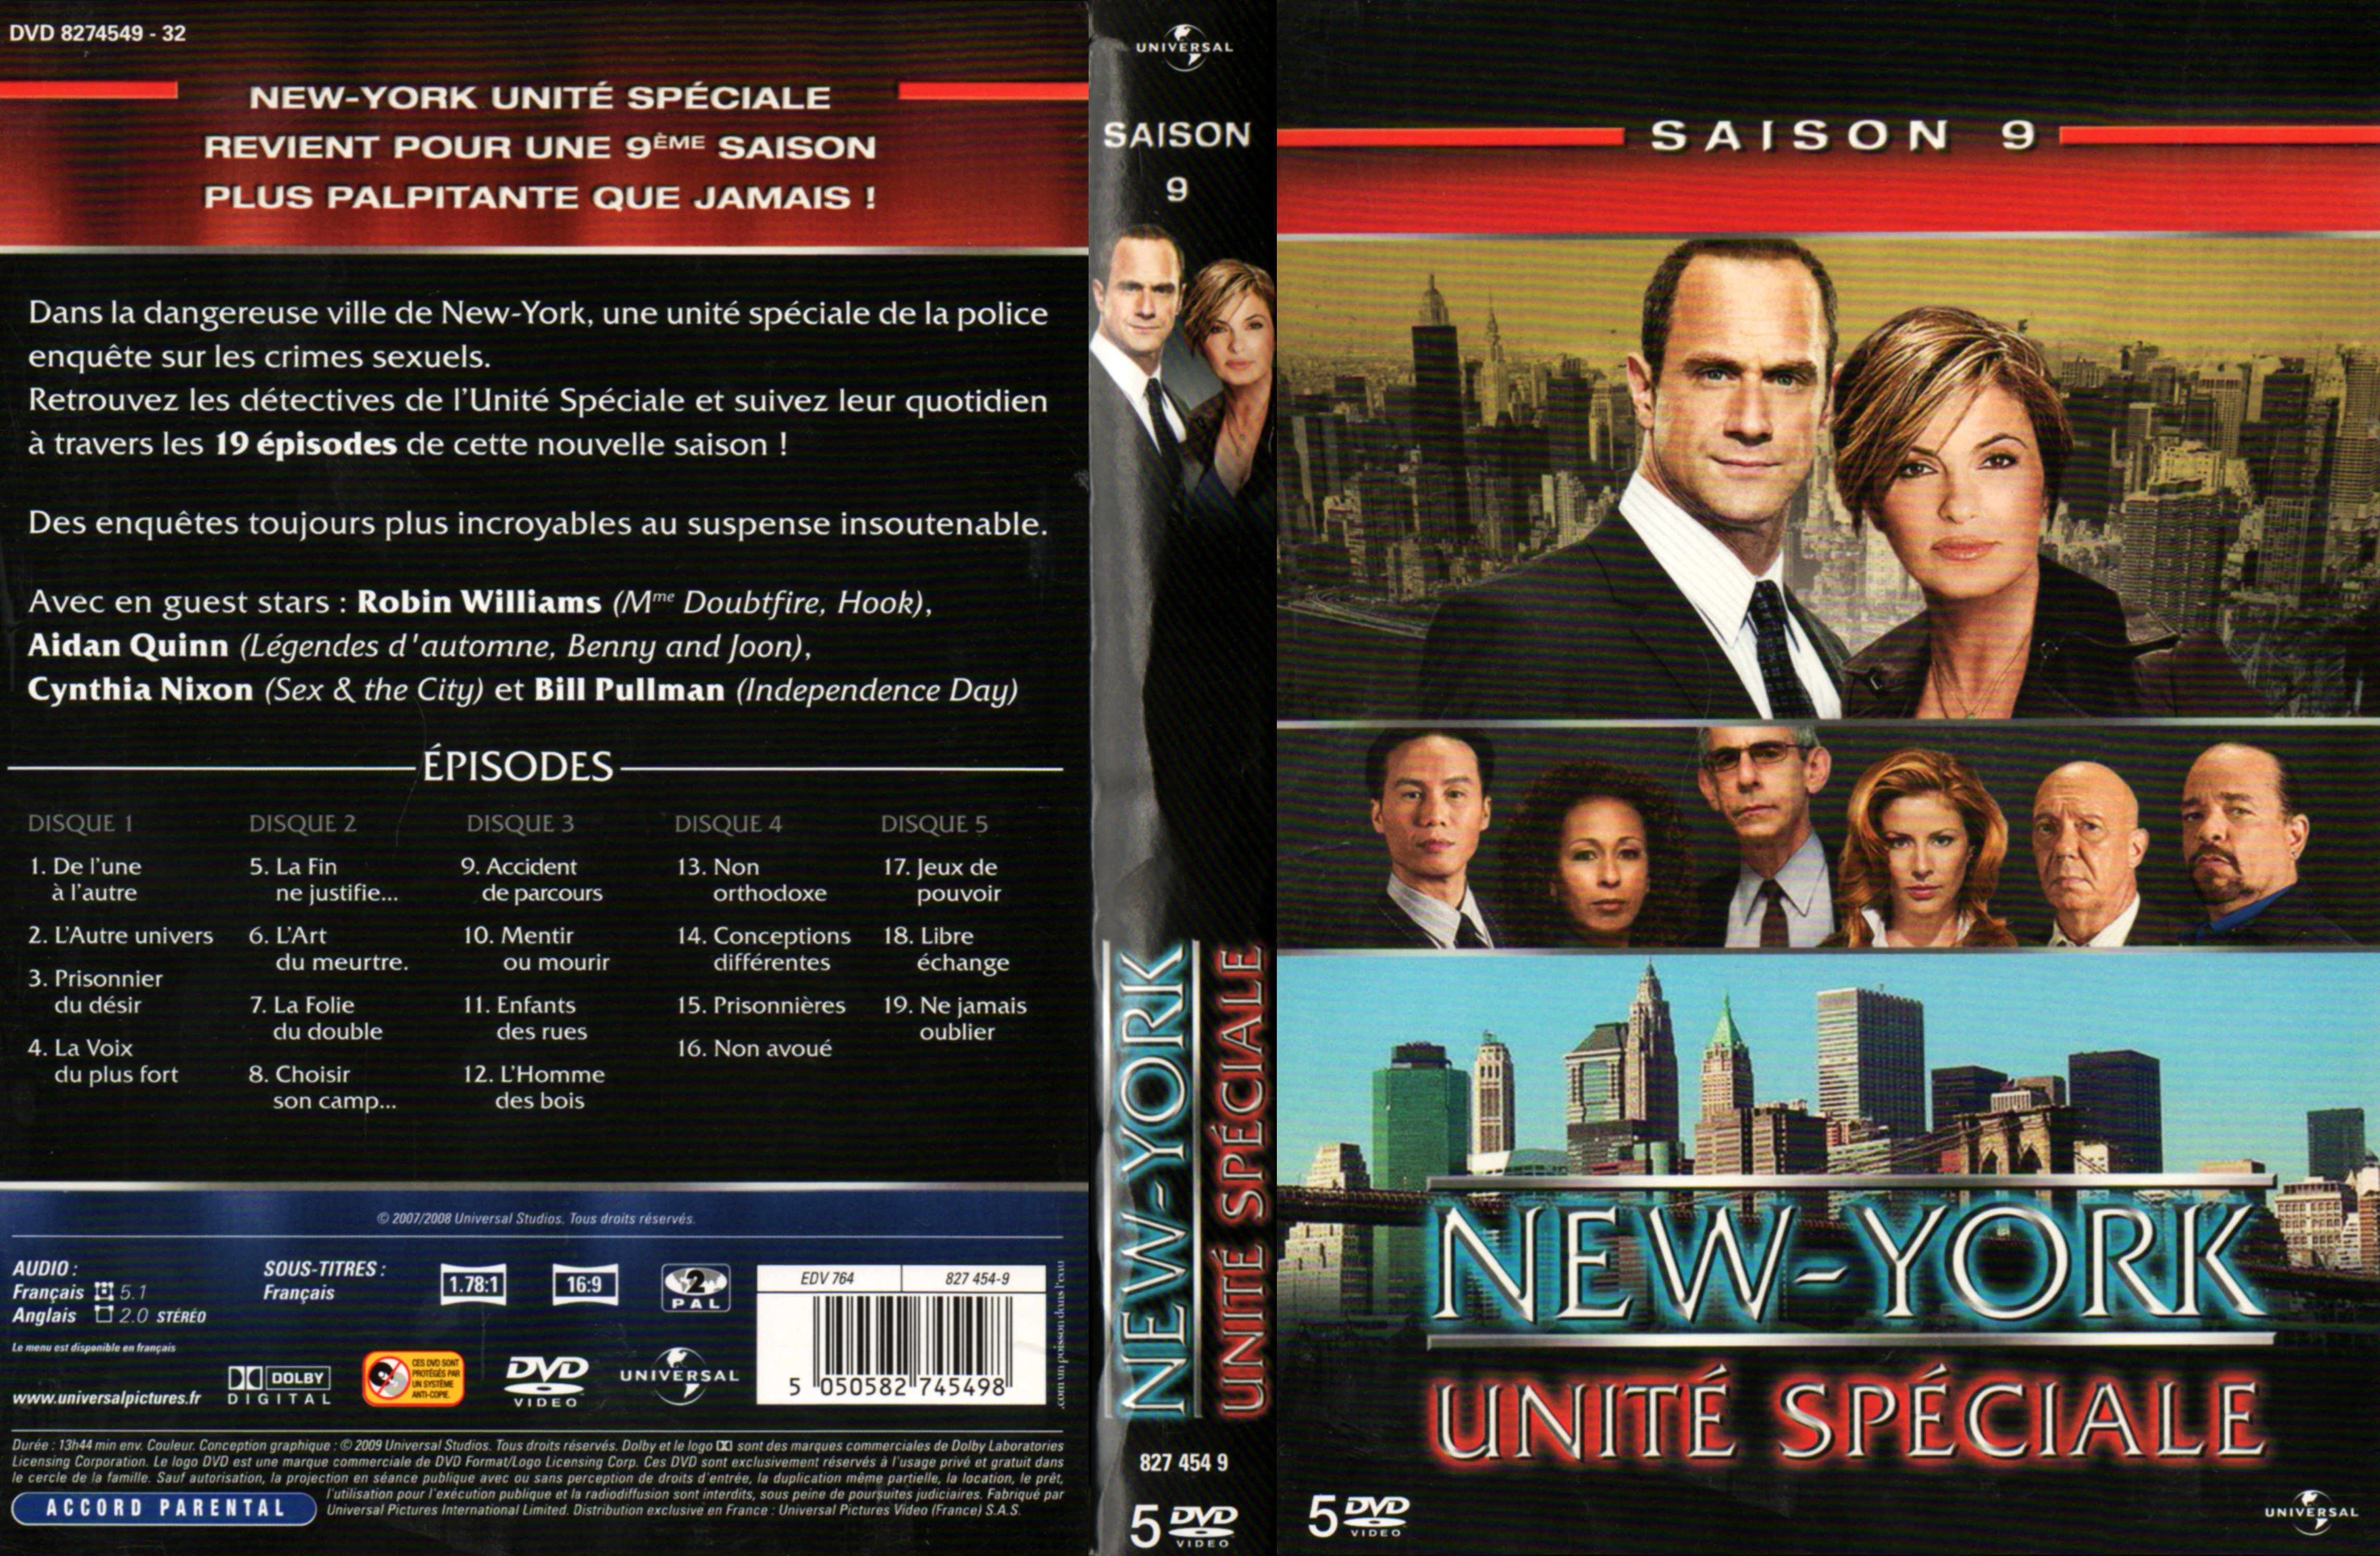 Jaquette DVD New York unit spciale saison 9 COFFRET